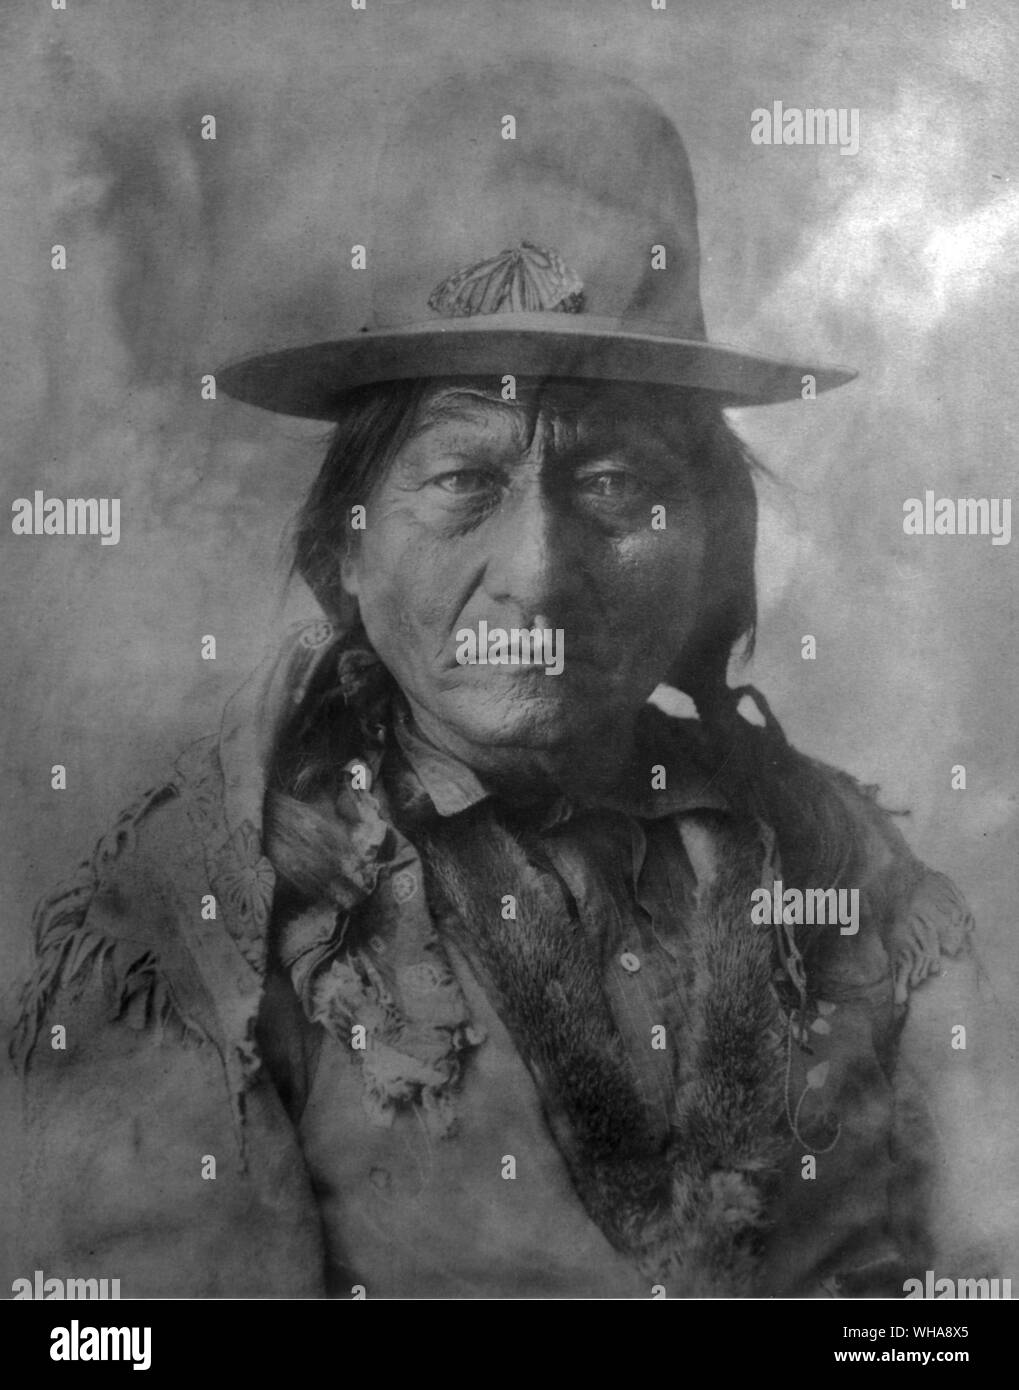 Retrato de Toro Sentado. Los Sioux. Sioux Hunkpapa (1831-1890). Toro Sentado, hombre de medicina Lakota y Jefe fue considerado el último Sioux a rendirse ante el Gobierno de los EE.UU.. A principios de los 1850s, los lakotas (sioux) había empezado a sentir la presión del blanco de la expansión hacia el oeste de los Estados Unidos. Toro Sentado no participó en la resistencia hasta 1863, cuando los pobladores amenazaron a los Hunkpapa cotos de caza. Había distinguido desde una edad temprana como un líder, matando su primer búfalo en diez y el recuento de golpe (tocando el enemigo sin su conocimiento) a los 14 años de edad. Debido a Foto de stock